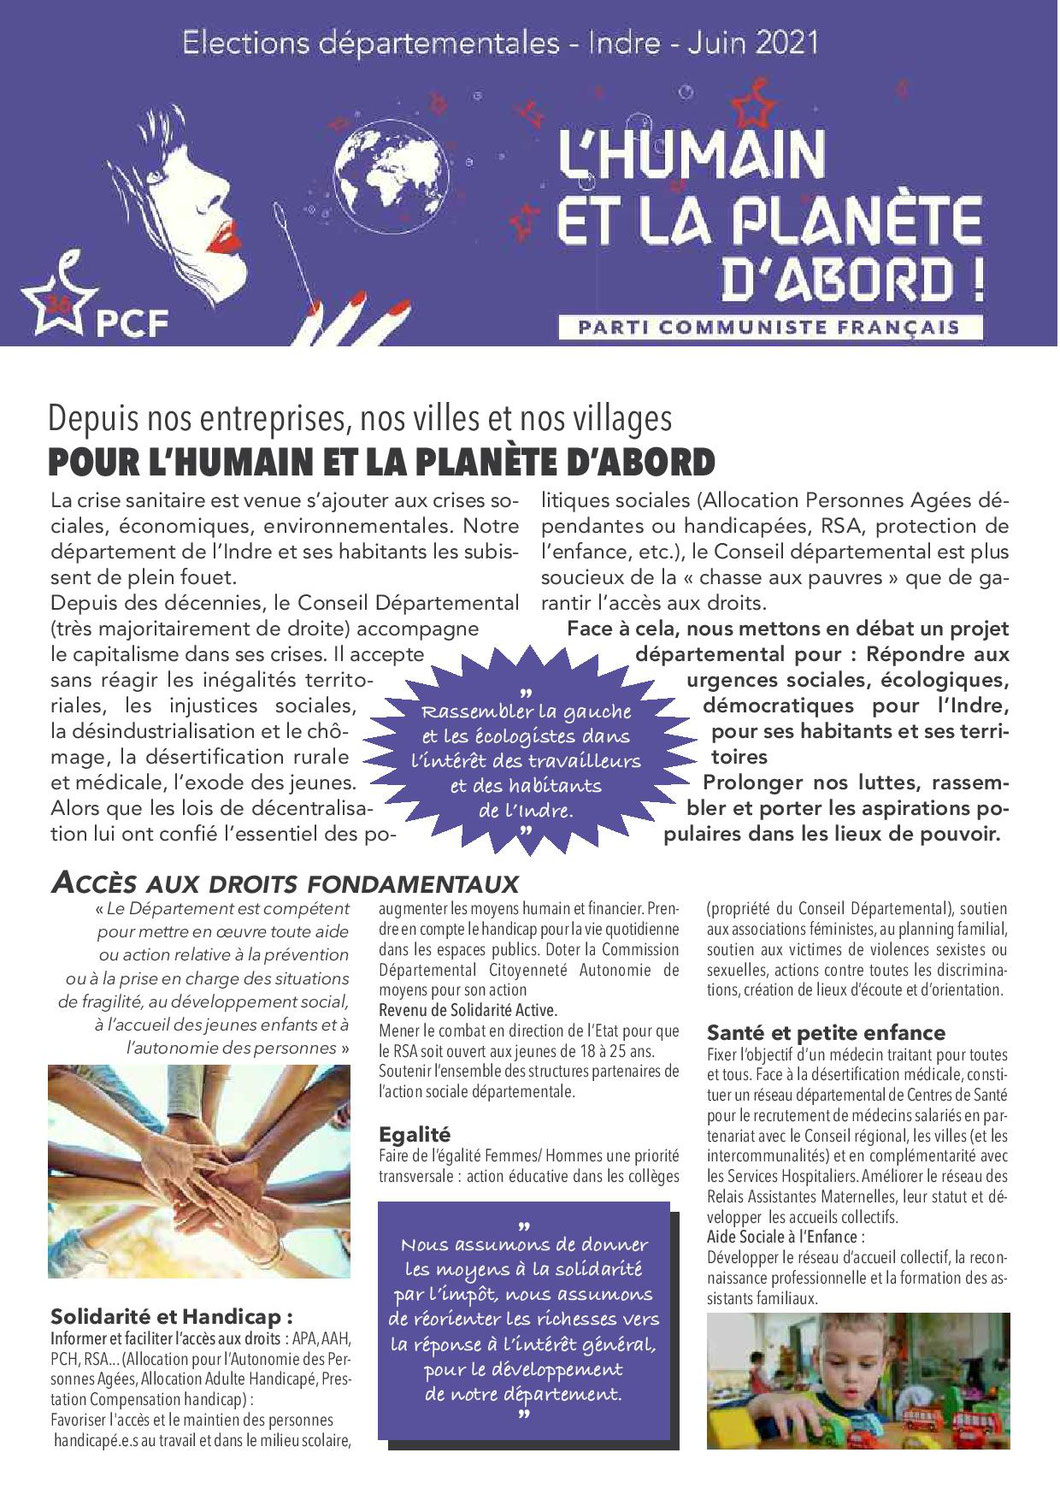 contribution du PCF pour les élections départementales 2021 dans l'Indre.